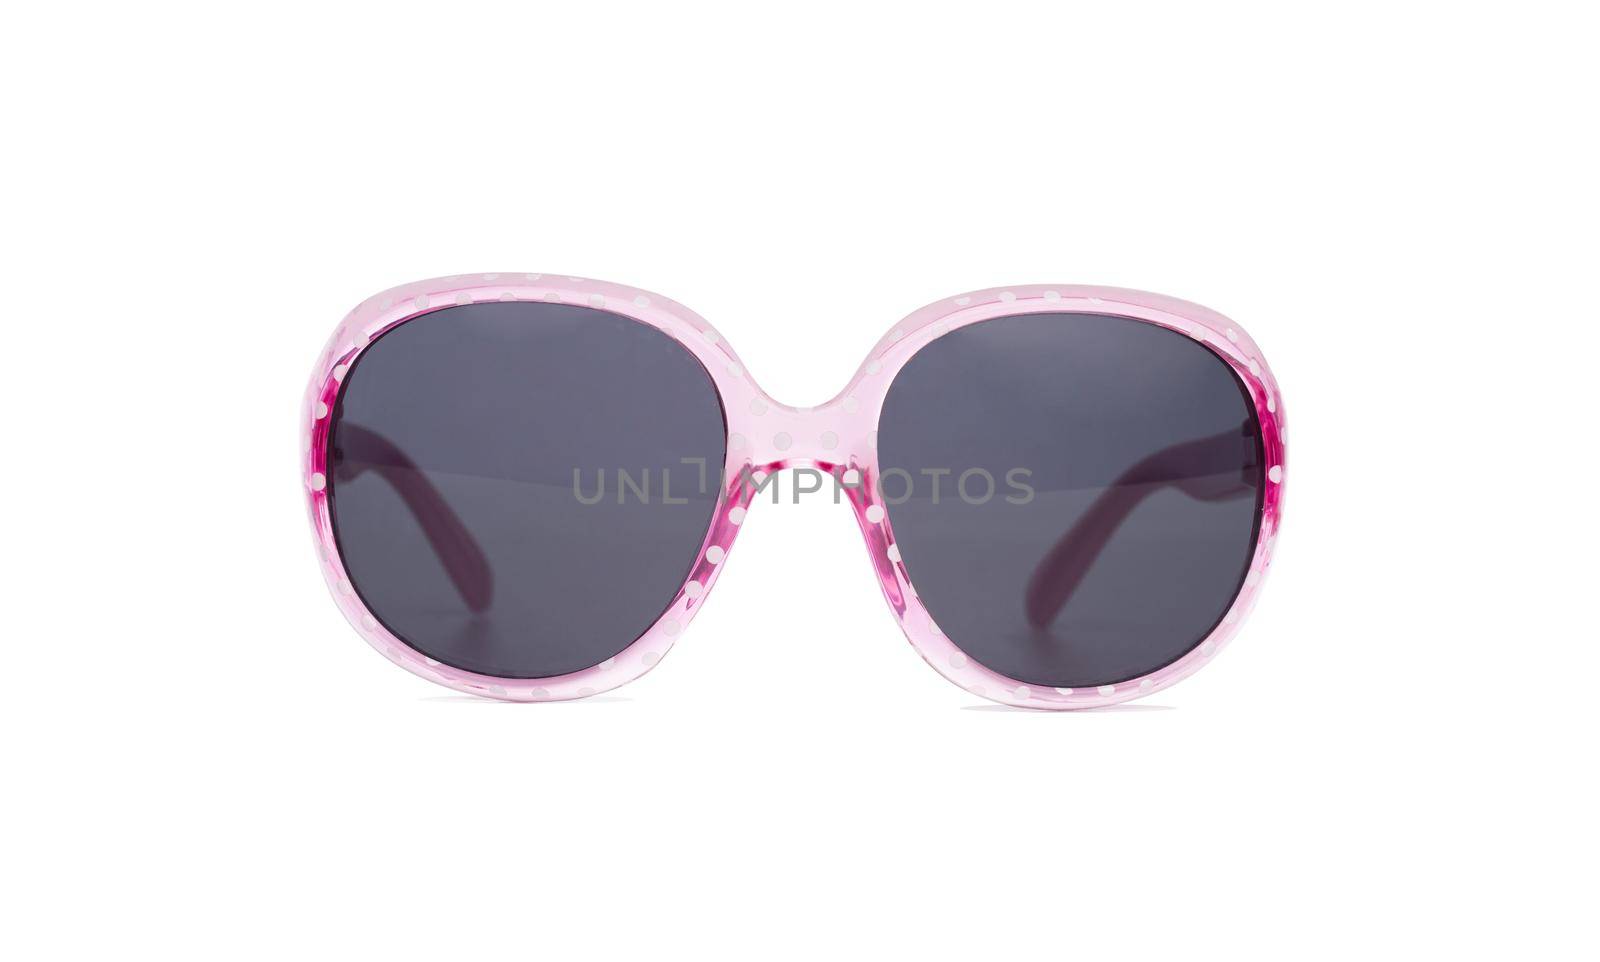 Sunglasses in pink frame by GekaSkr